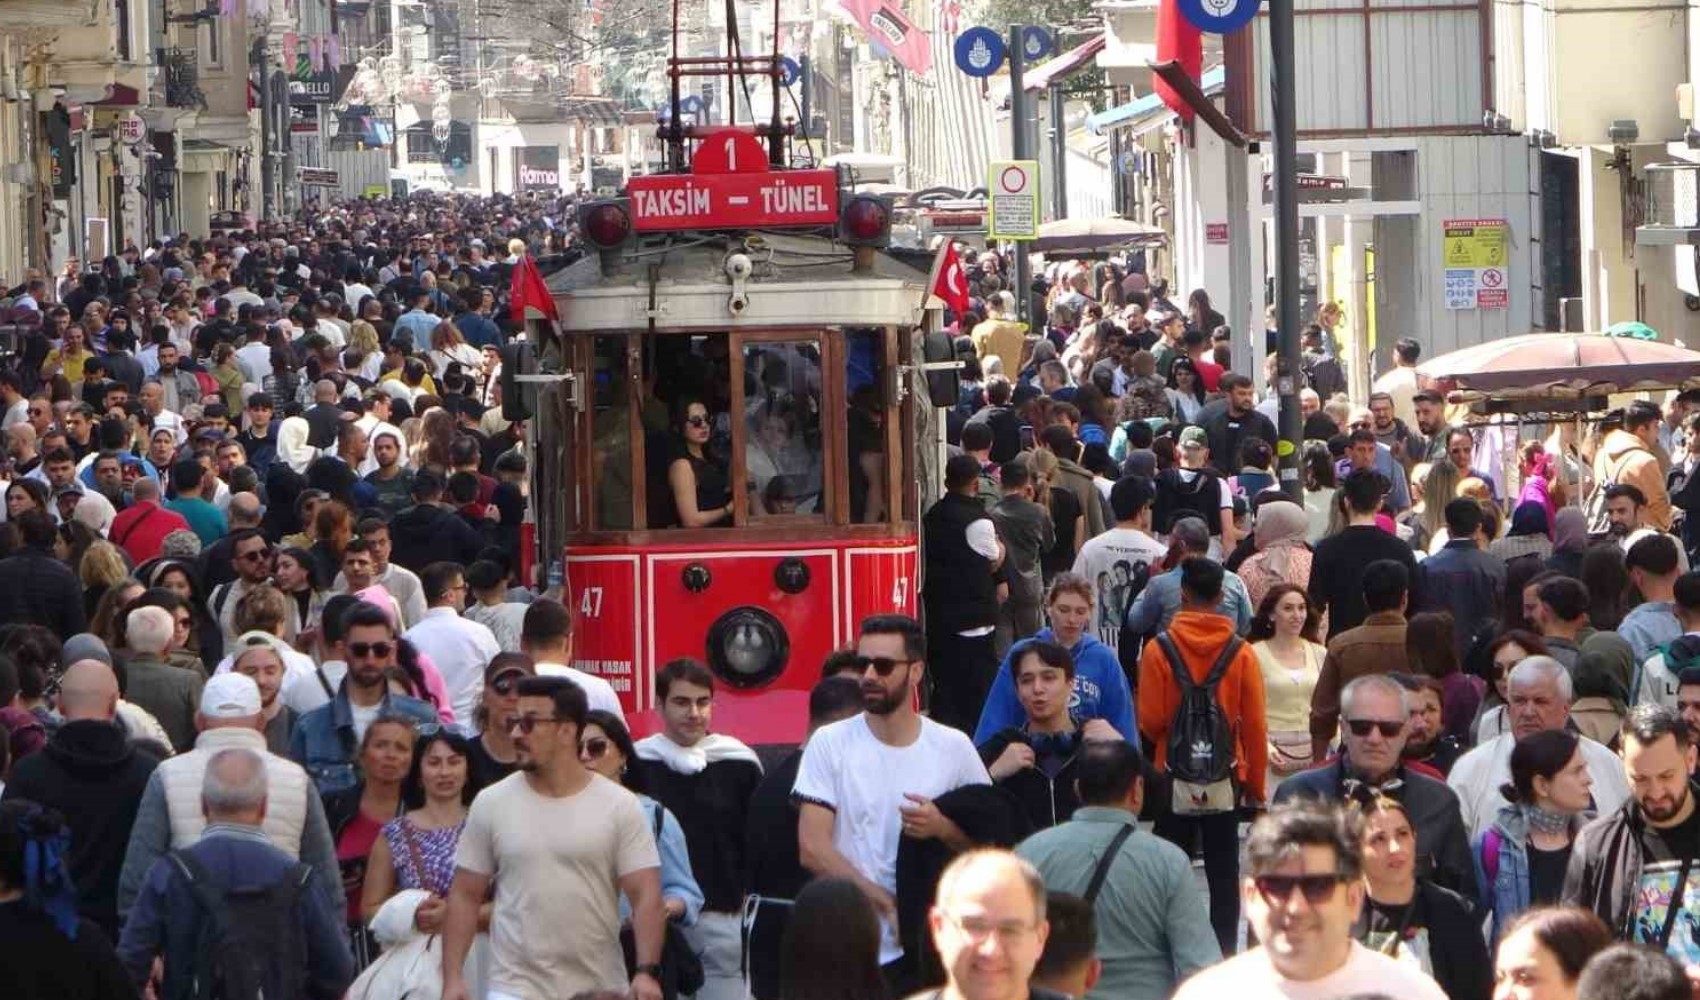 'Bayramda İstanbul boşaldı' diyenler yanılıyor: Taksim'de insan seli